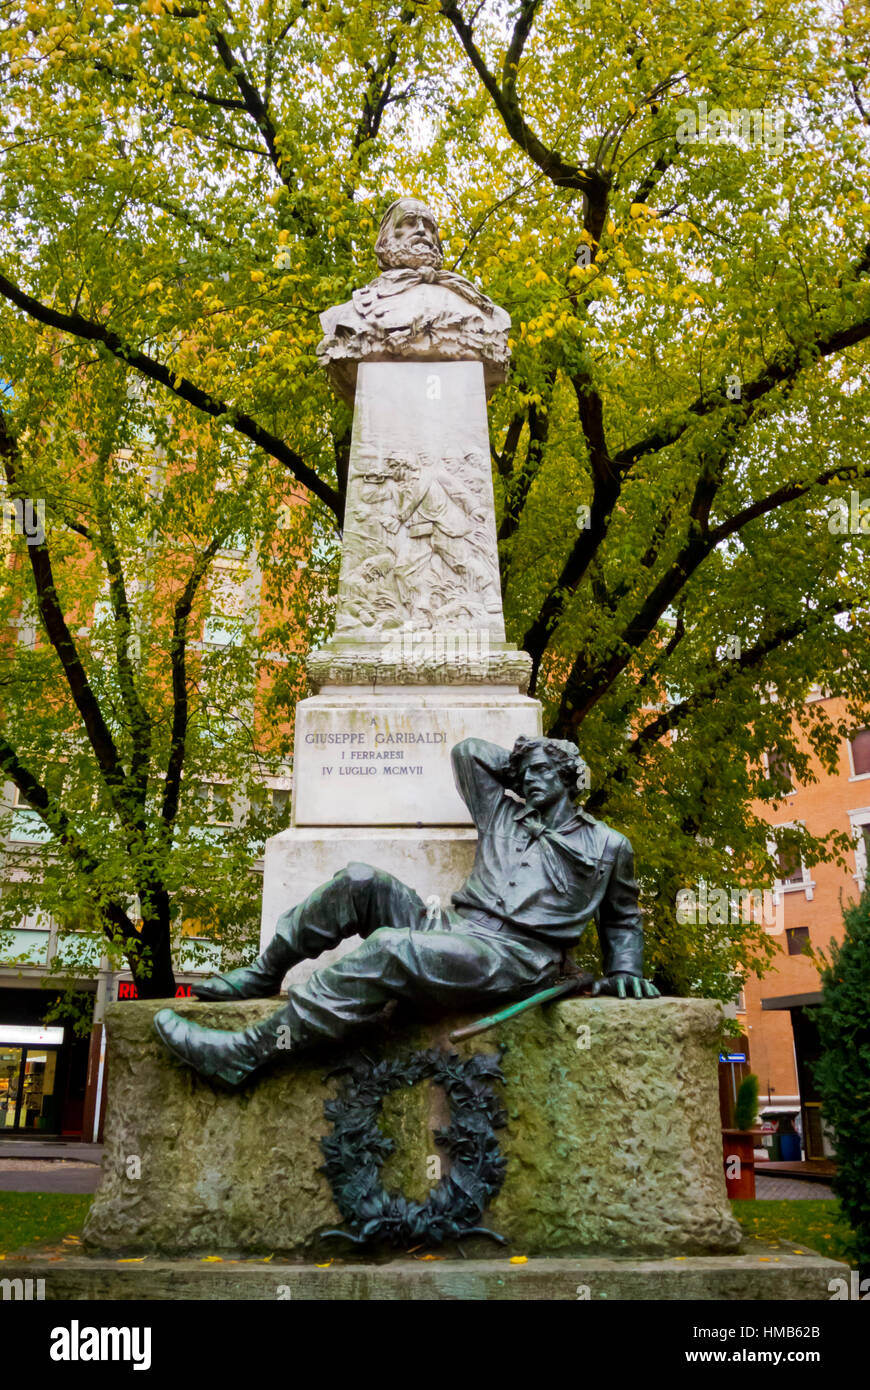 Giuseppe Garibaldi memorial, Ferrara, Emilia-Romagna, Italy Stock Photo